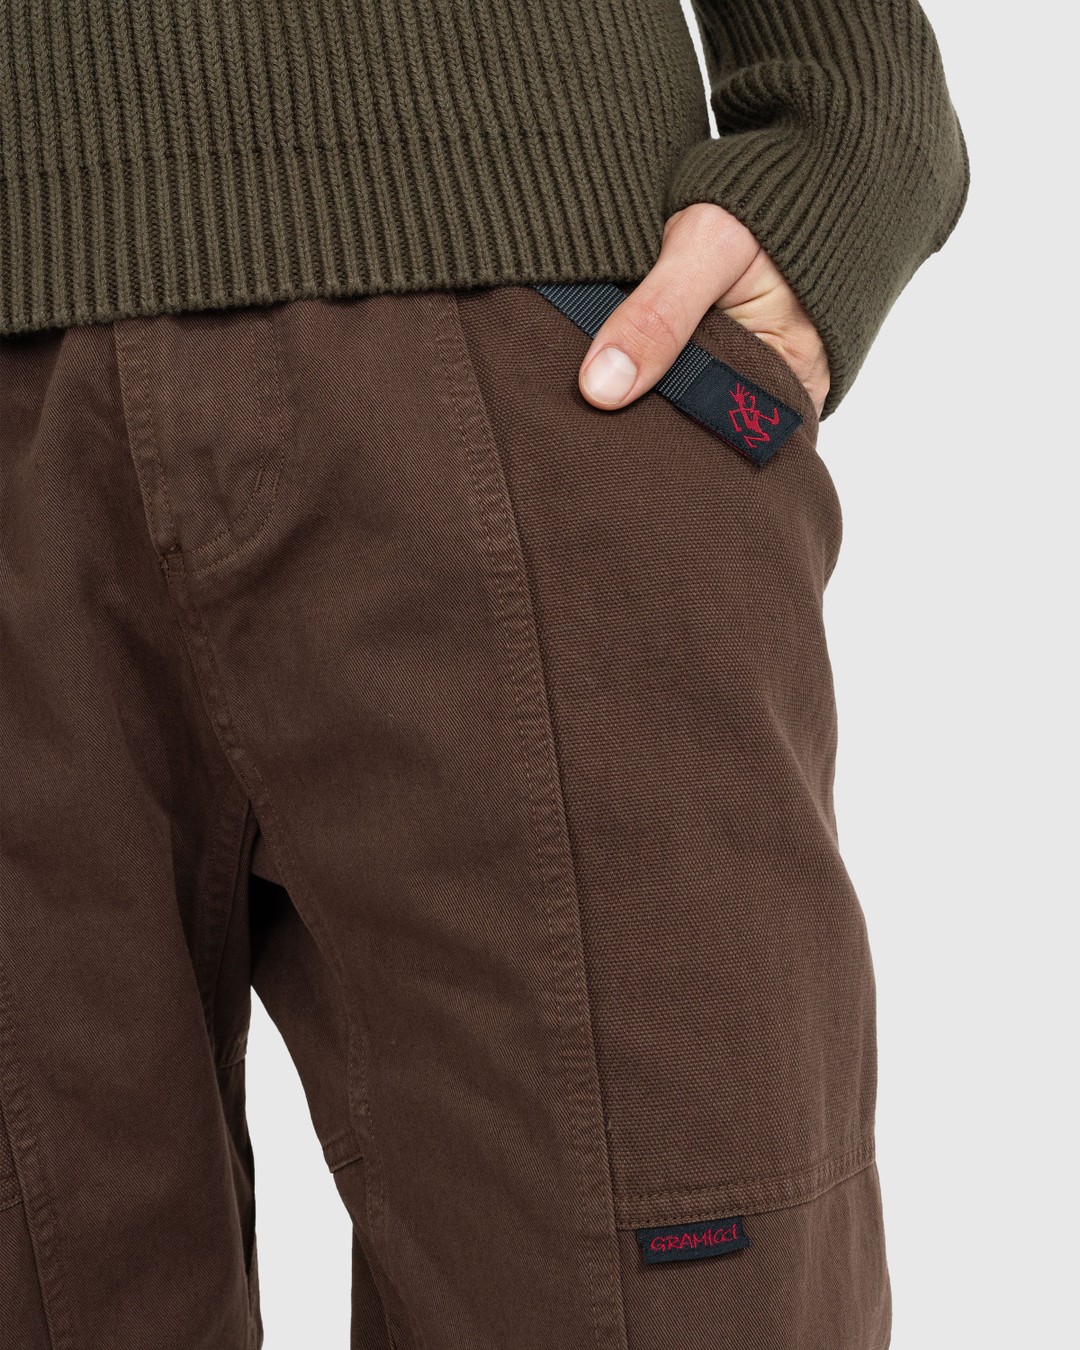 Gramicci – Gadget Pant Tobacco - Pants - Brown - Image 5